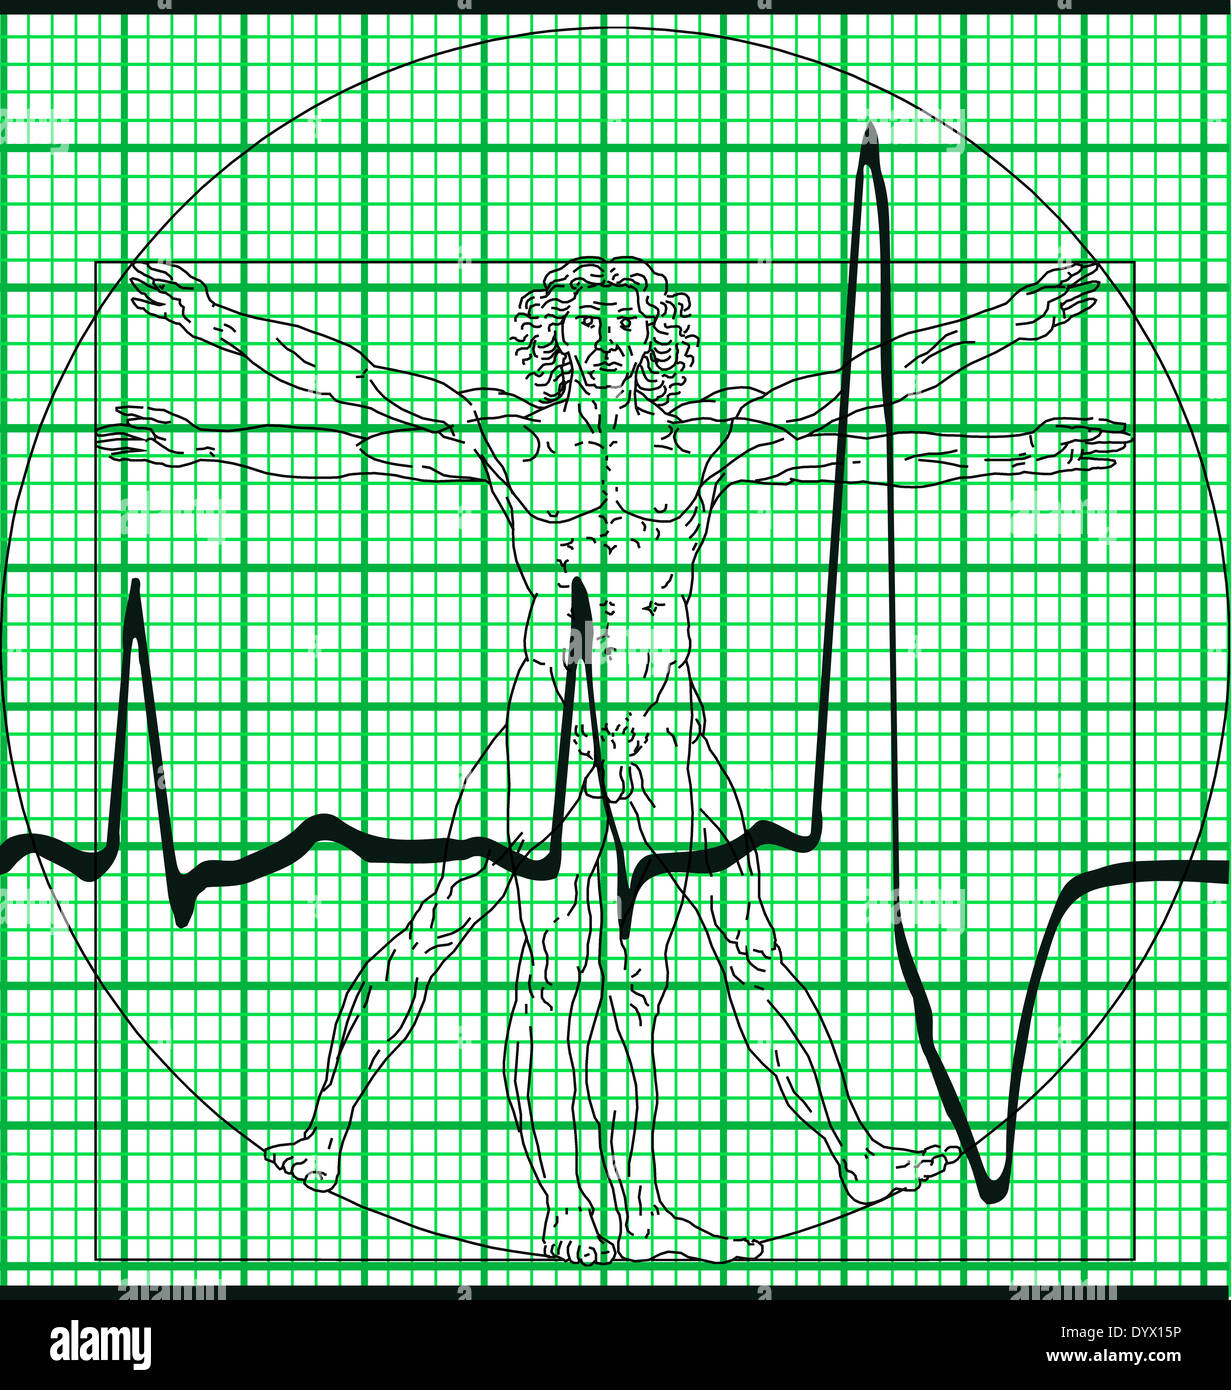 Léonard de Vinci Homme de Vitruve du croquis et de l'électrocardiogramme électrocardiogramme imprimer Banque D'Images